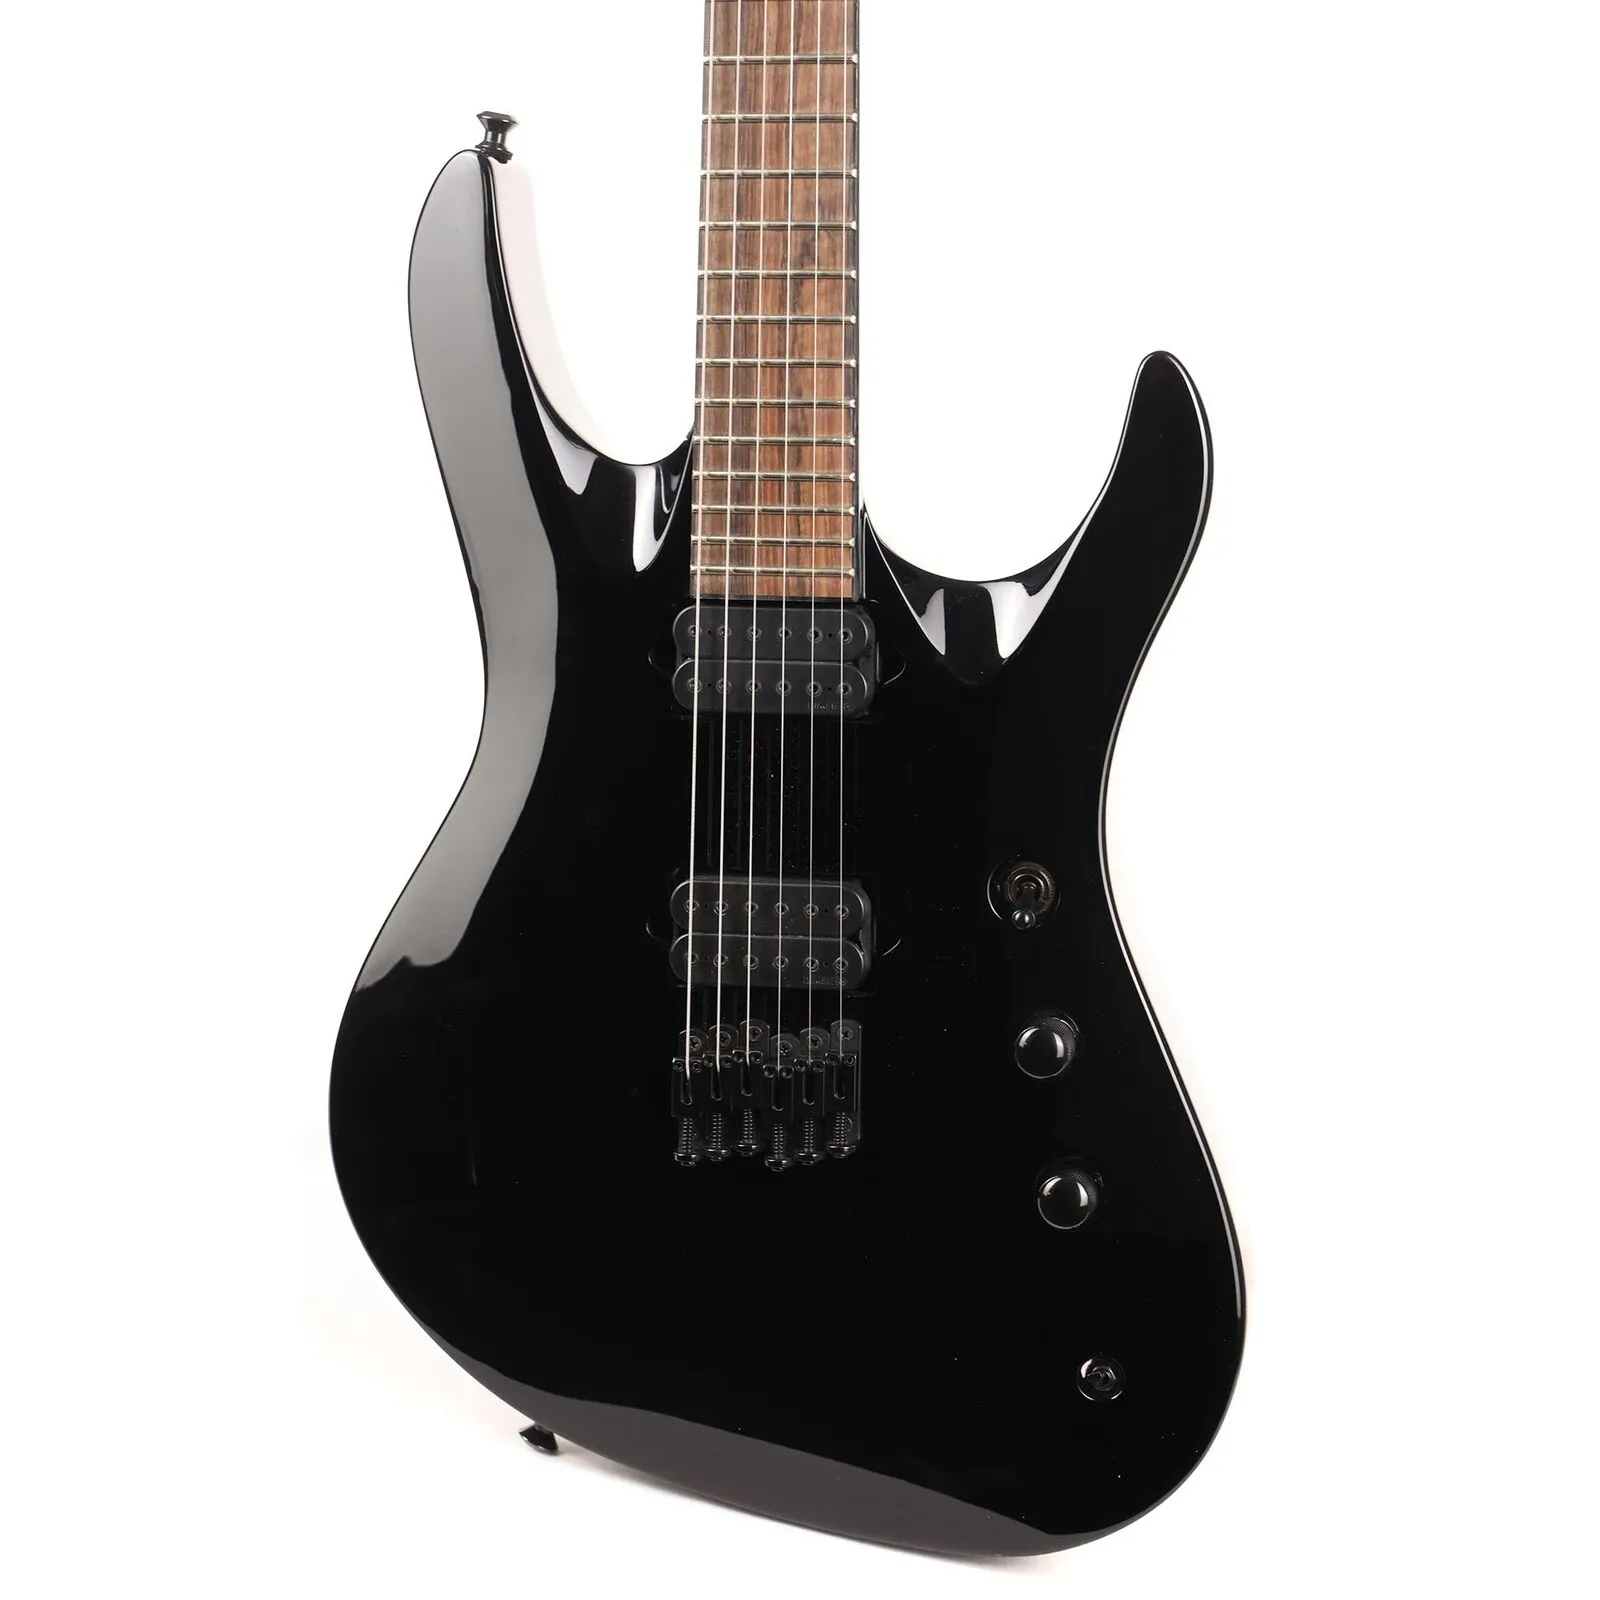 Chitarra elettrica Pro Series Chris Broderick Signature Soloist HT6 Gloss Black come nelle immagini